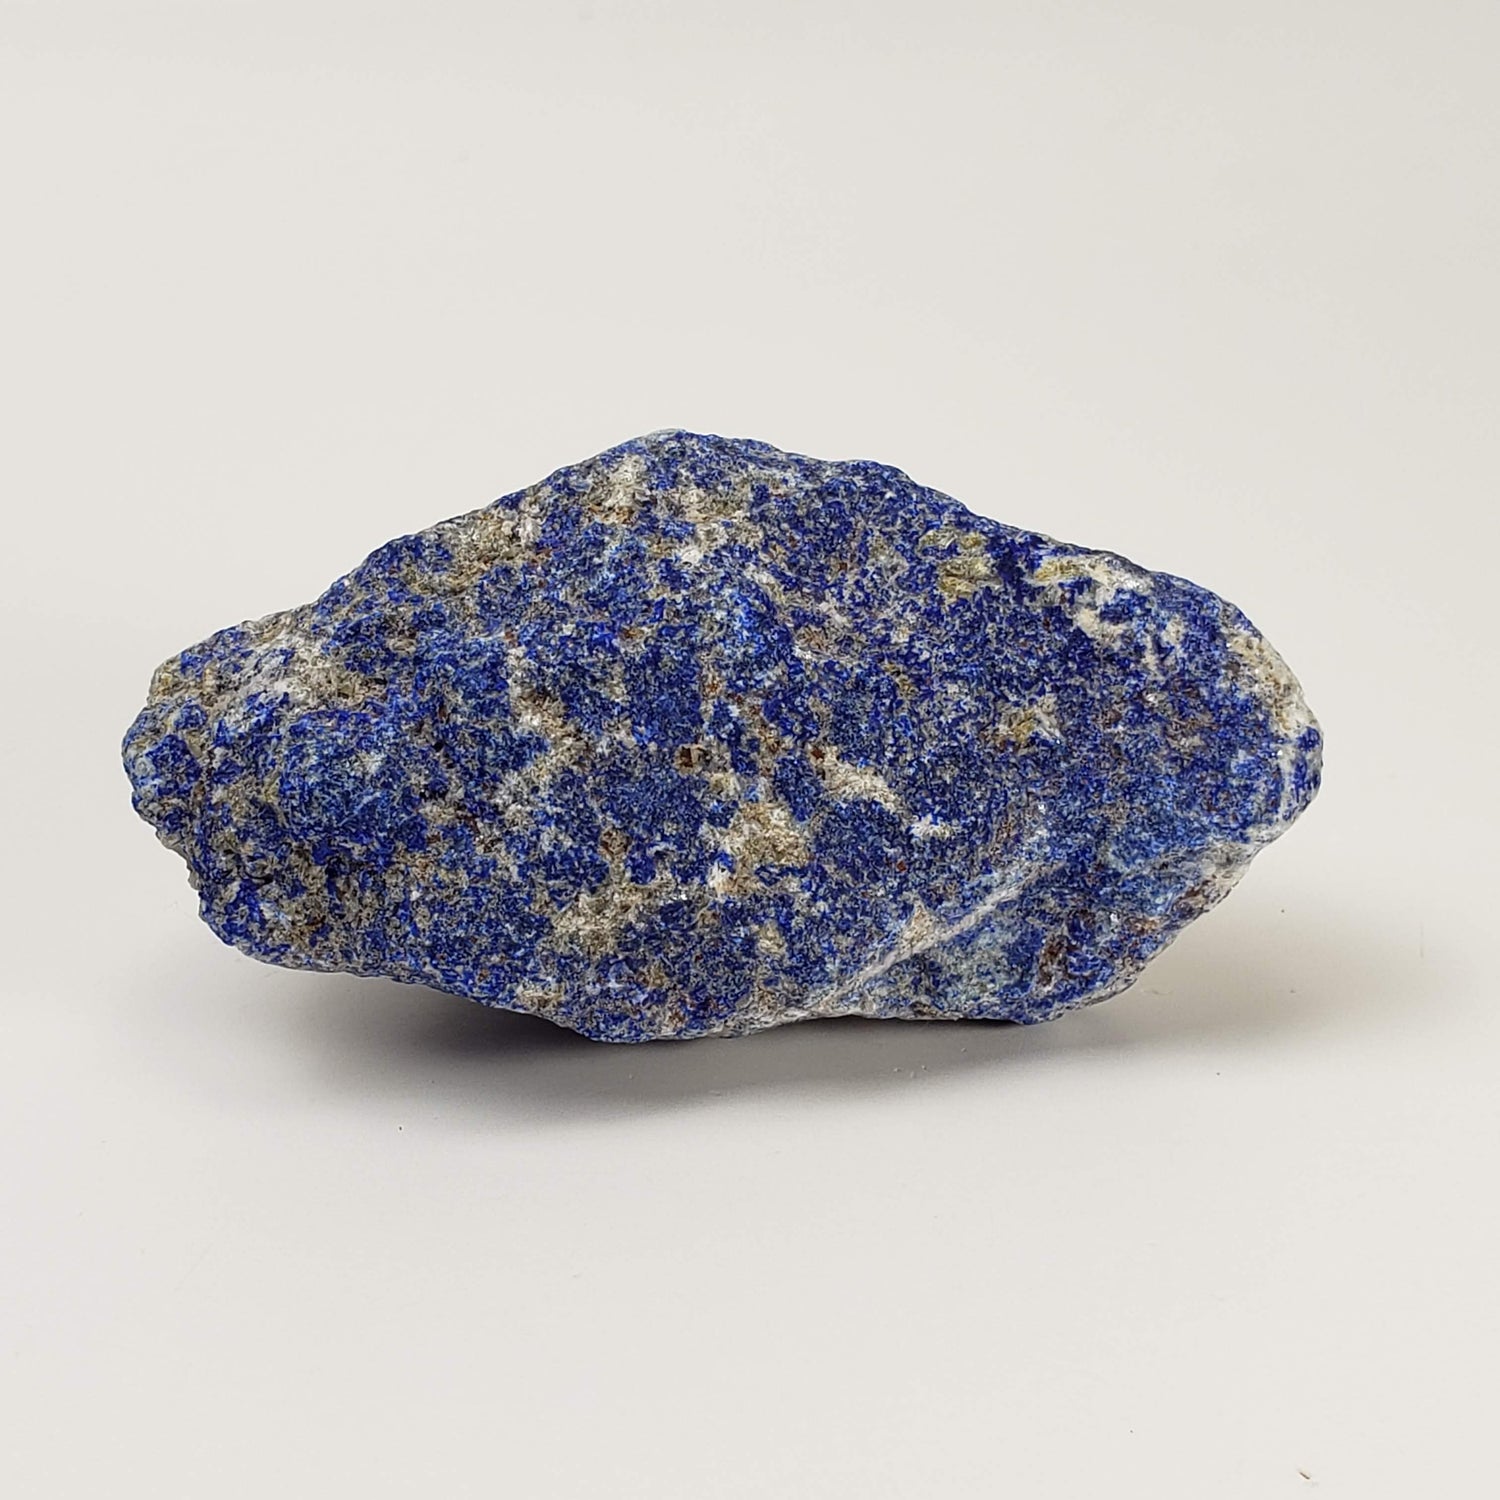 Lapis-lazuli brut | Bleu profond | 111,6 grammes | Afghanistan